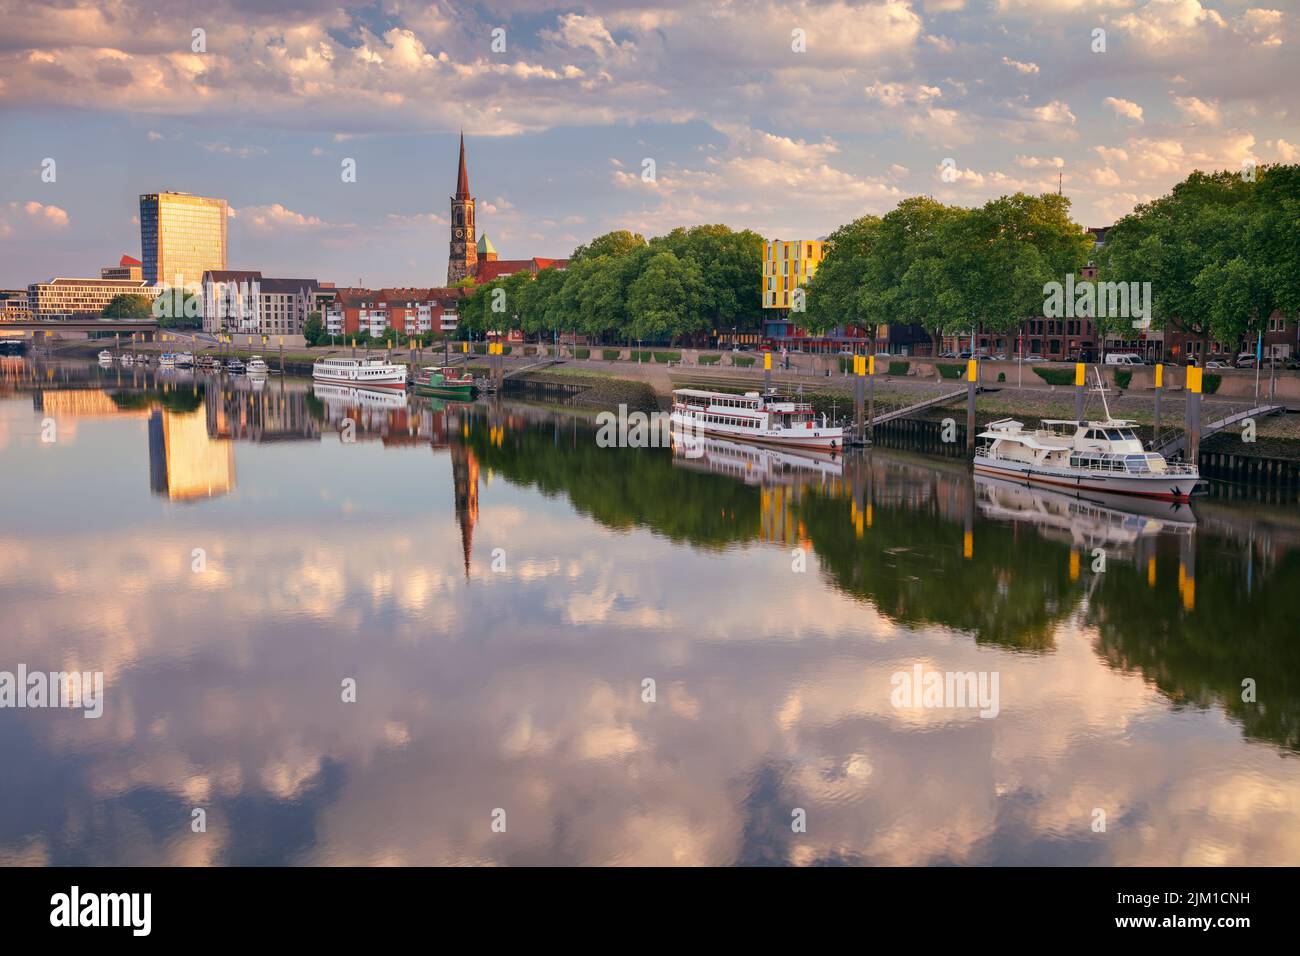 Brema, Germania. Immagine del paesaggio urbano del fiume Brema, in Germania, con il riflesso della Chiesa di Santo Stefano nel fiume Weser all'alba estiva. Foto Stock